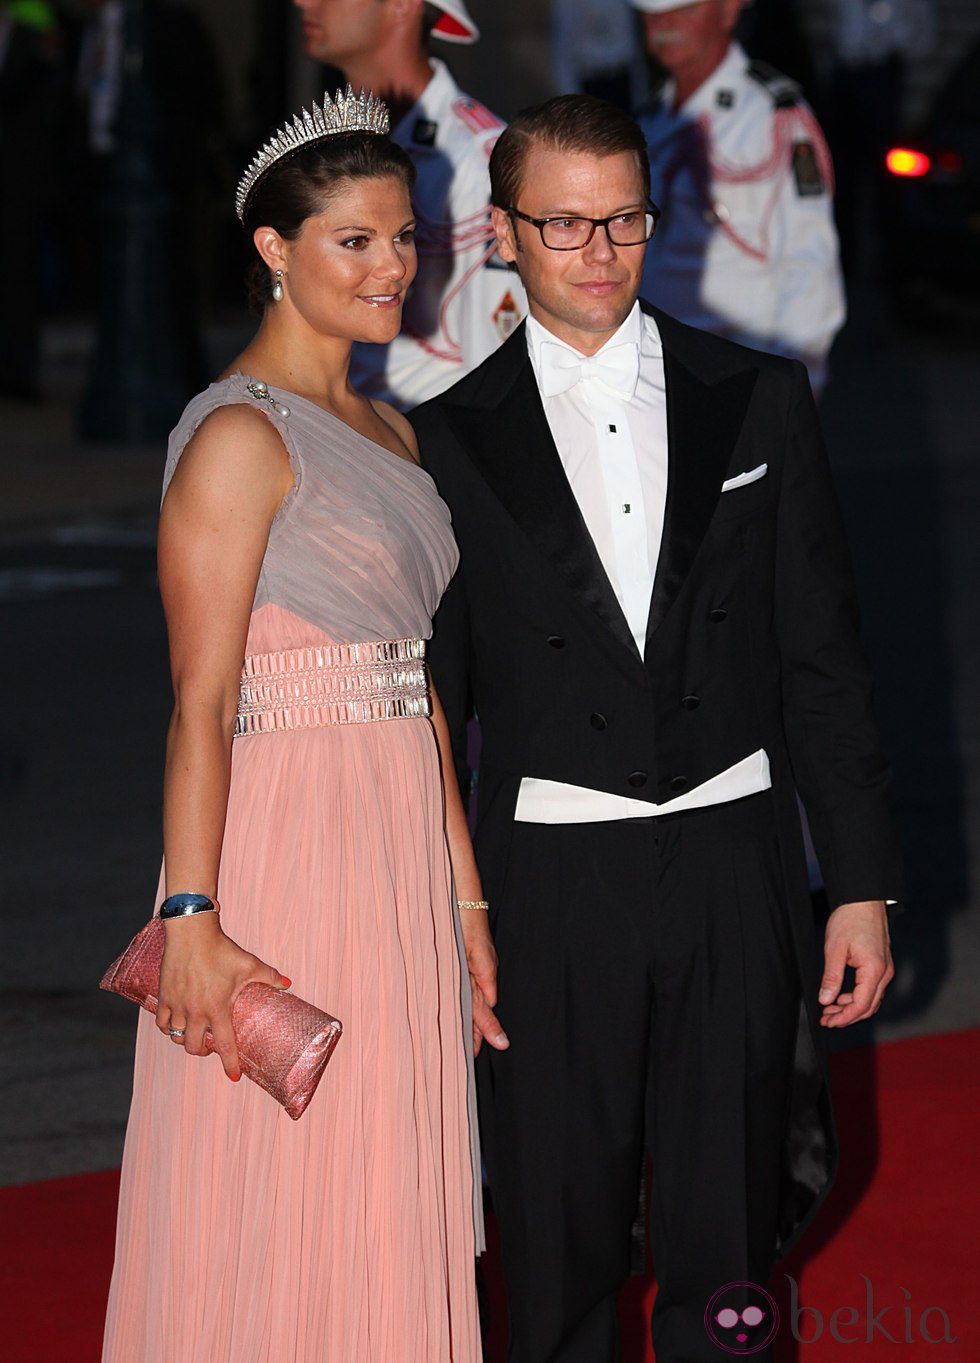 Daniel y Victoria de Suecia en la cena de gala tras la boda de Alberto de Mónaco